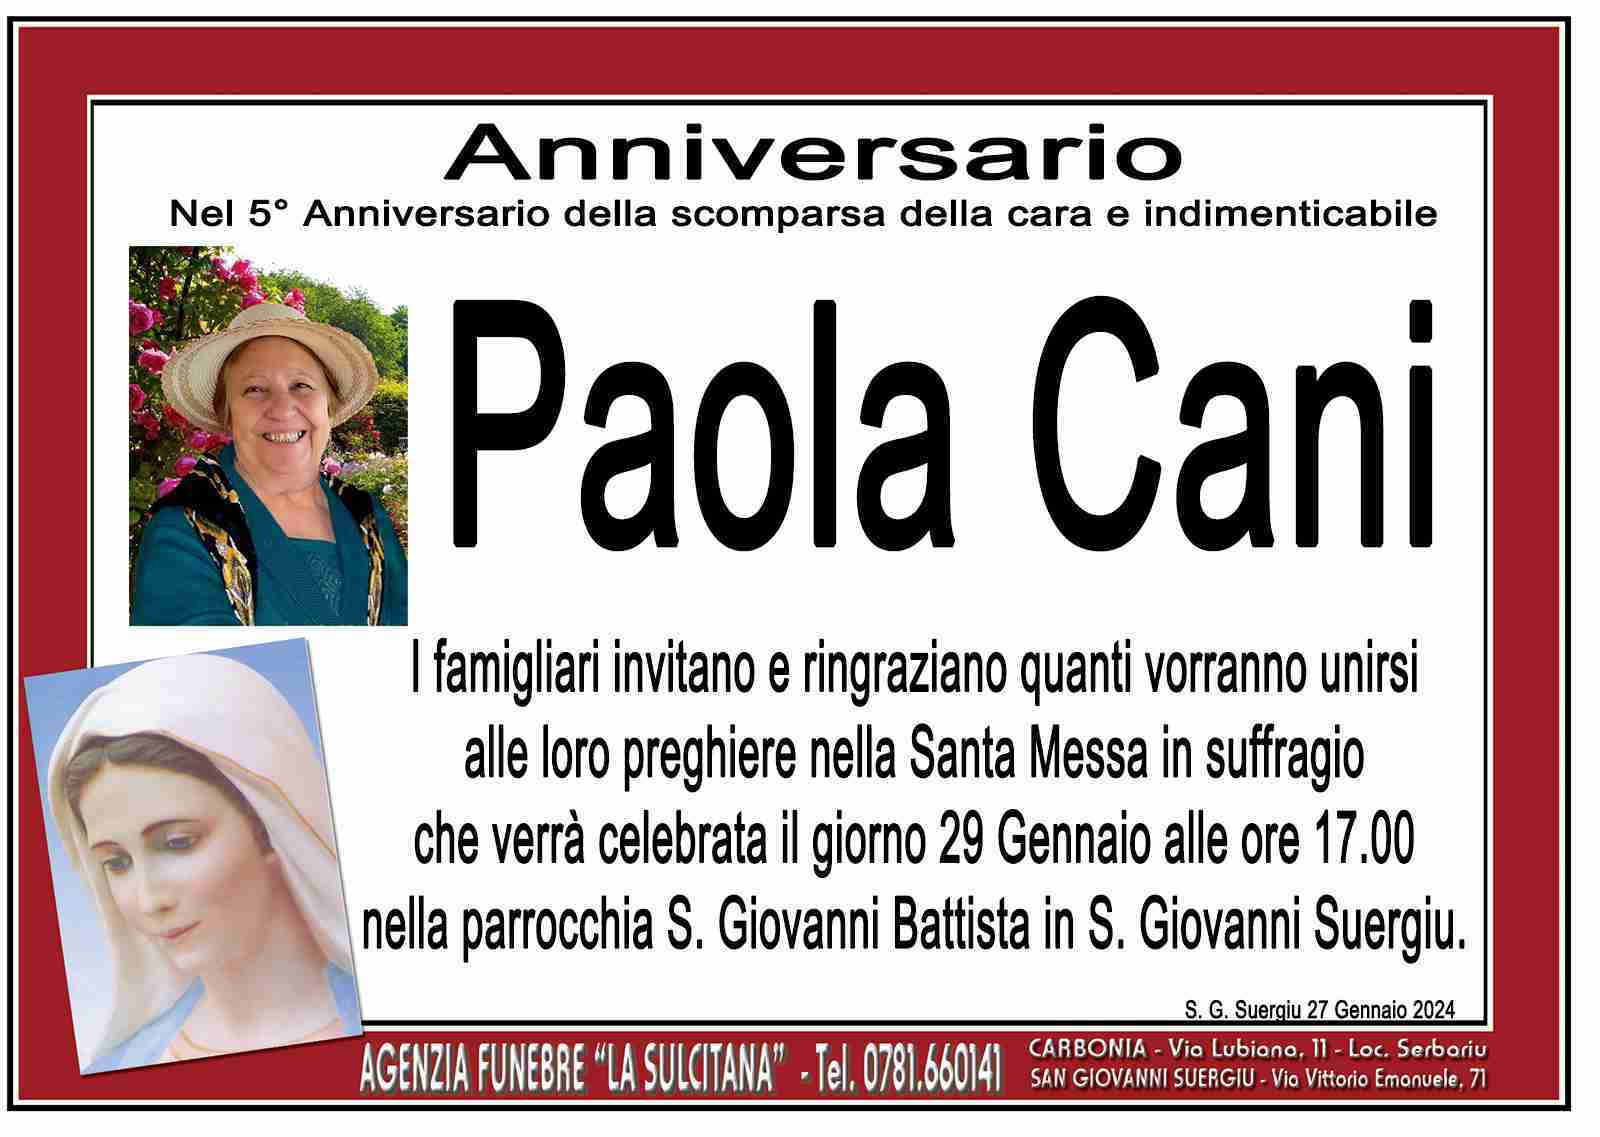 Paola Cani